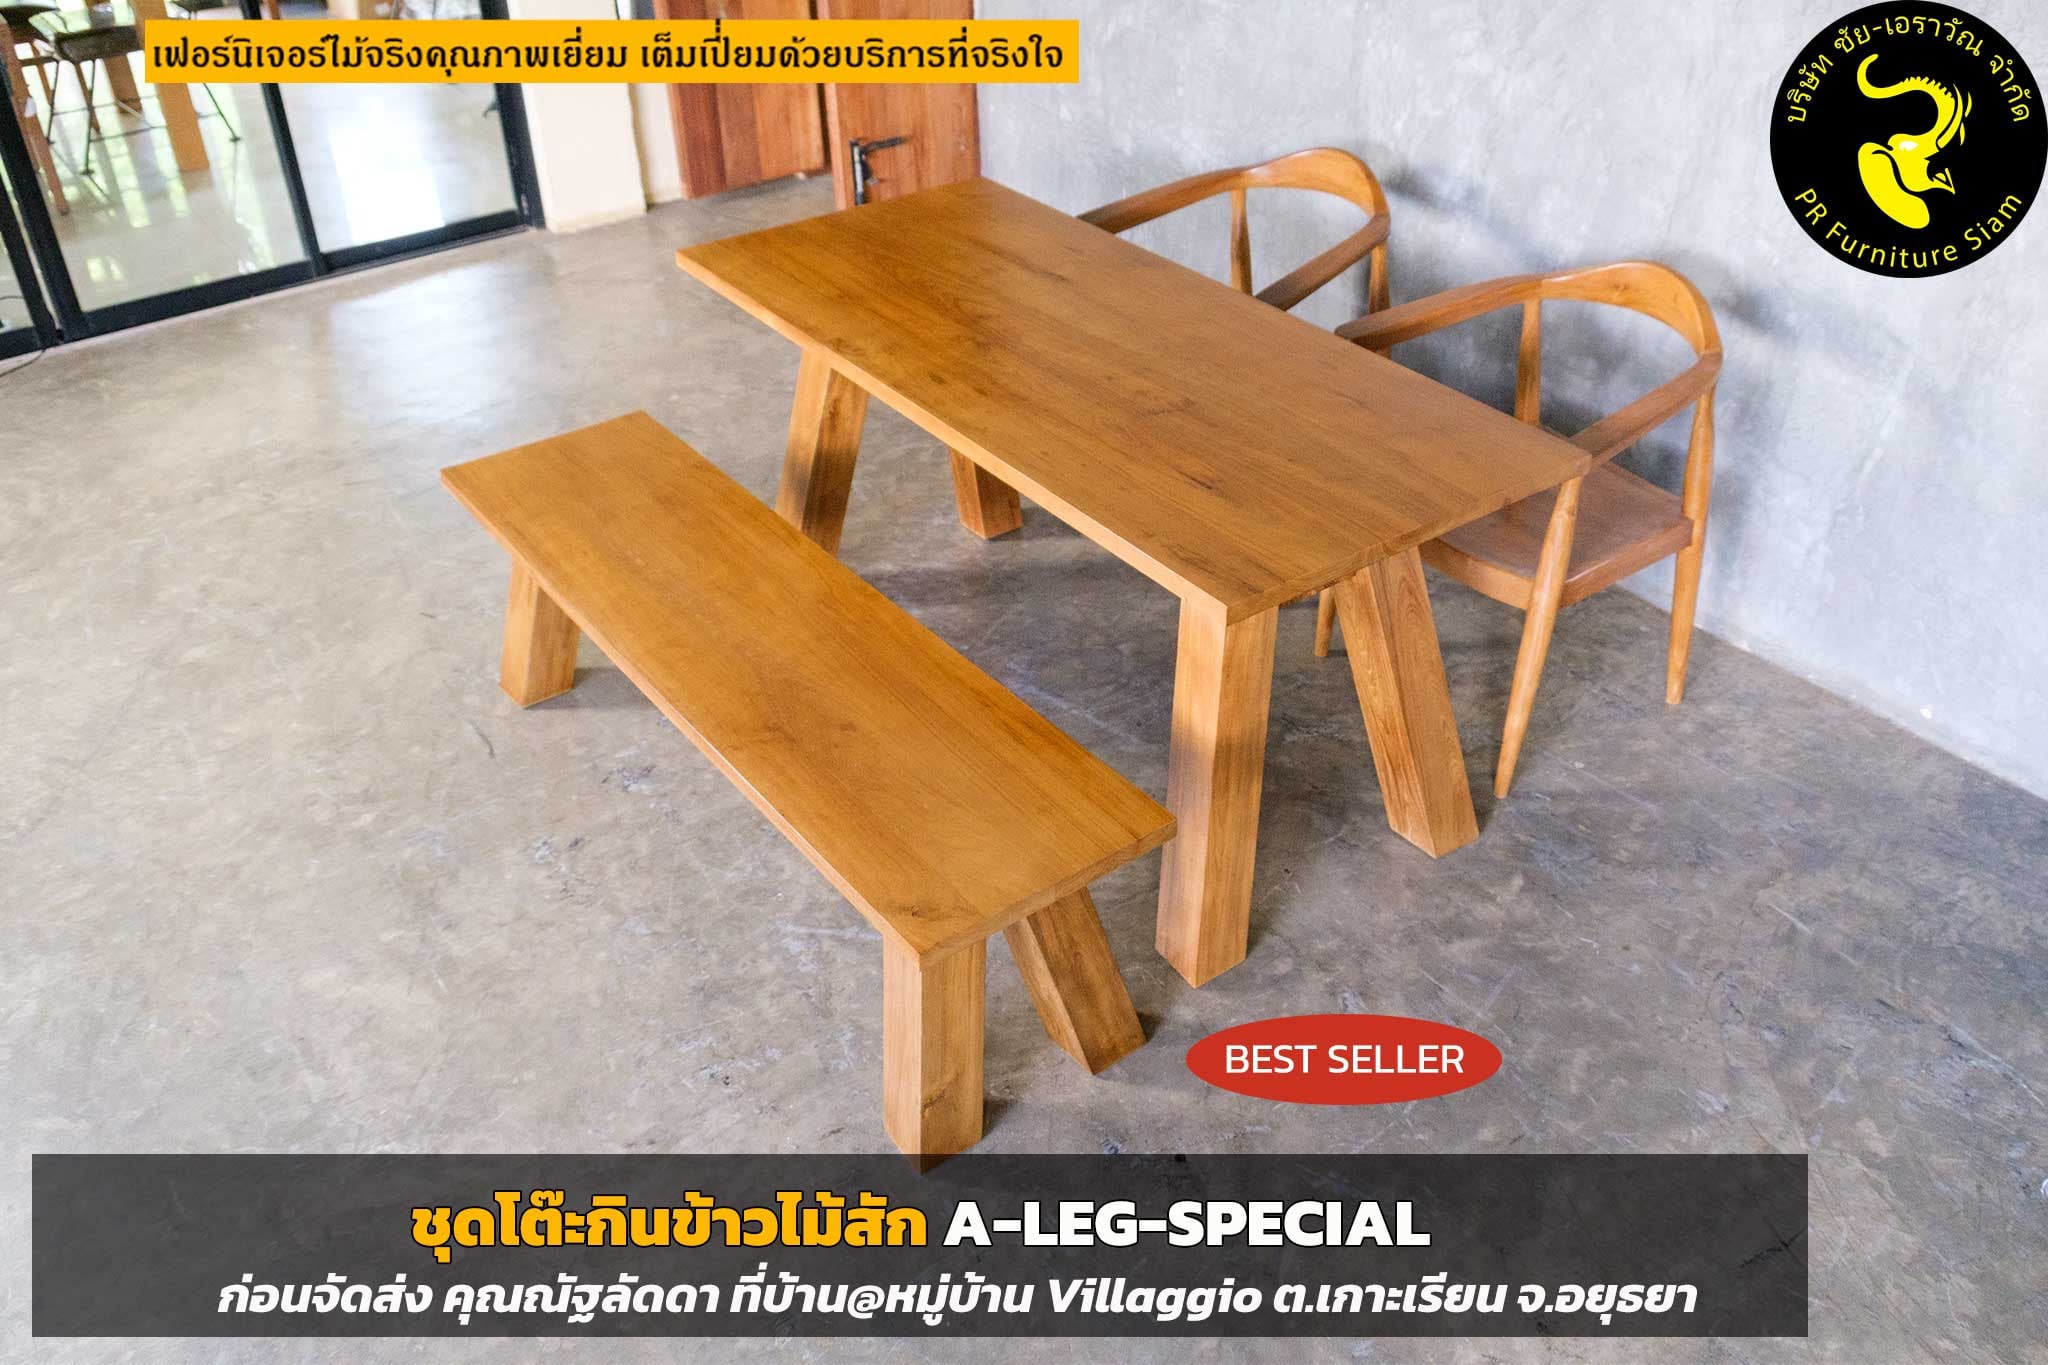 ชุดโต๊ะกินข้าวไม้สัก 4 ที่นั่ง A-LEG-Special